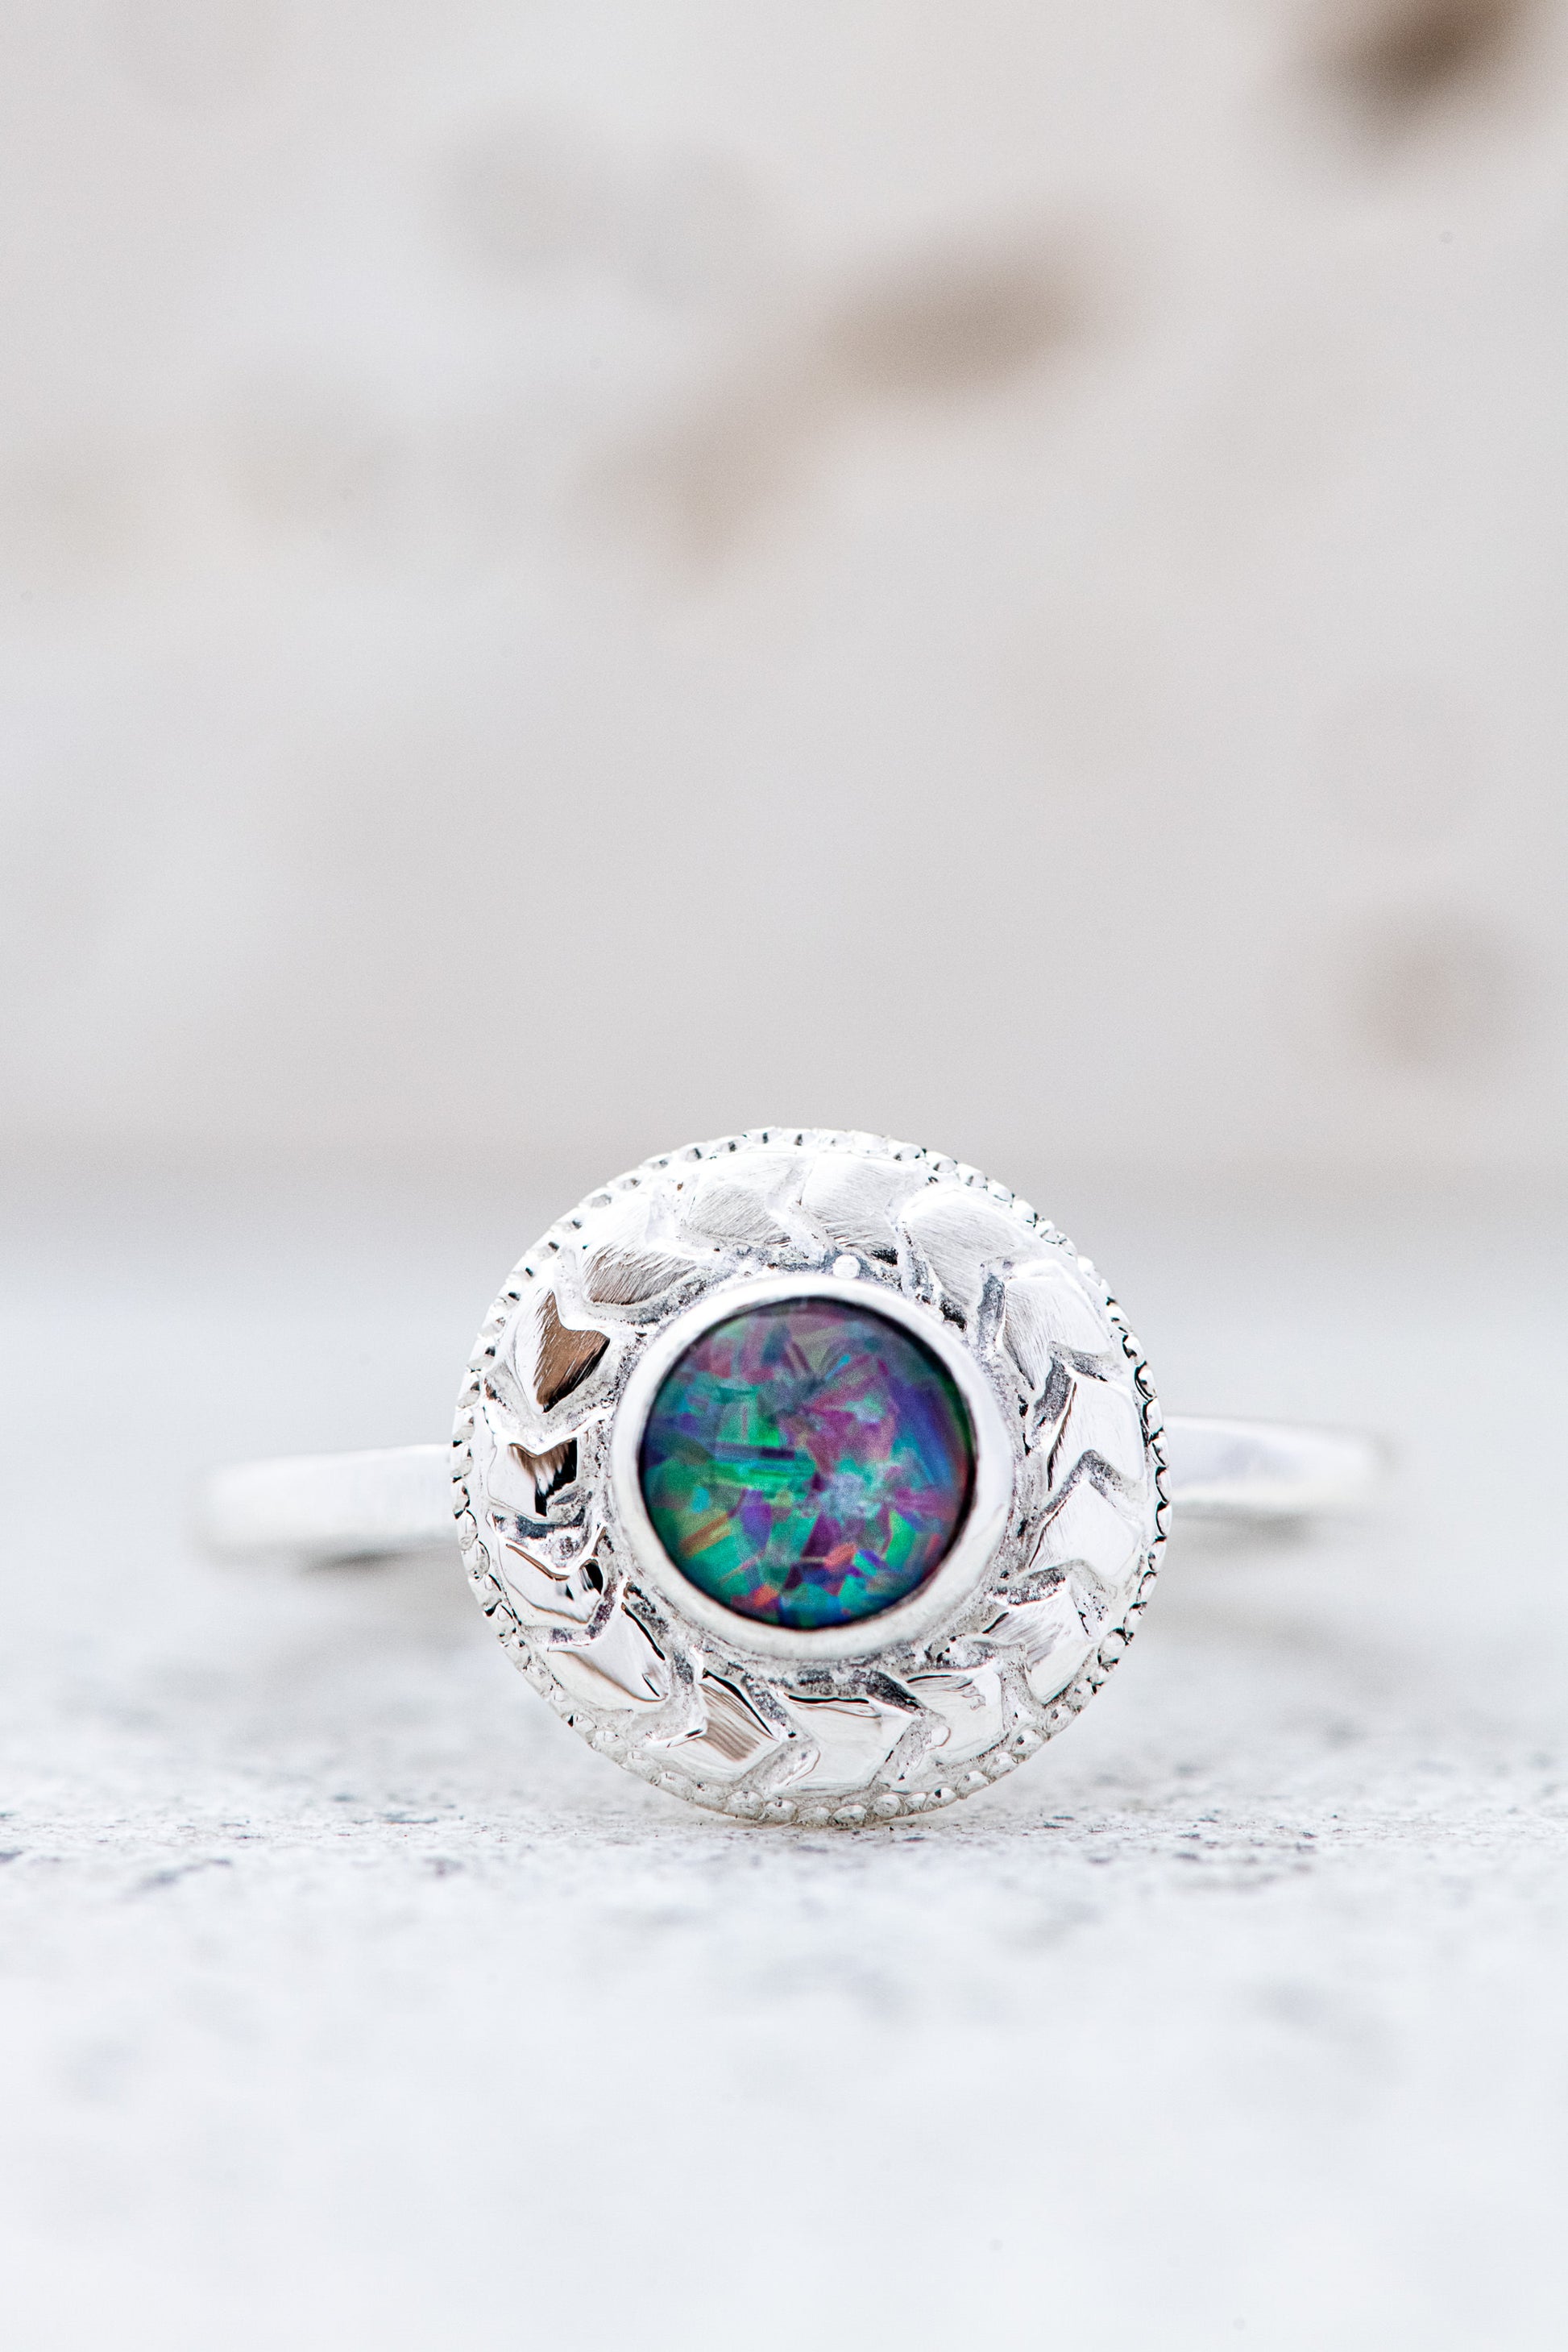 Handmade Australian Fire Opal ring by Cassin Jewelry.